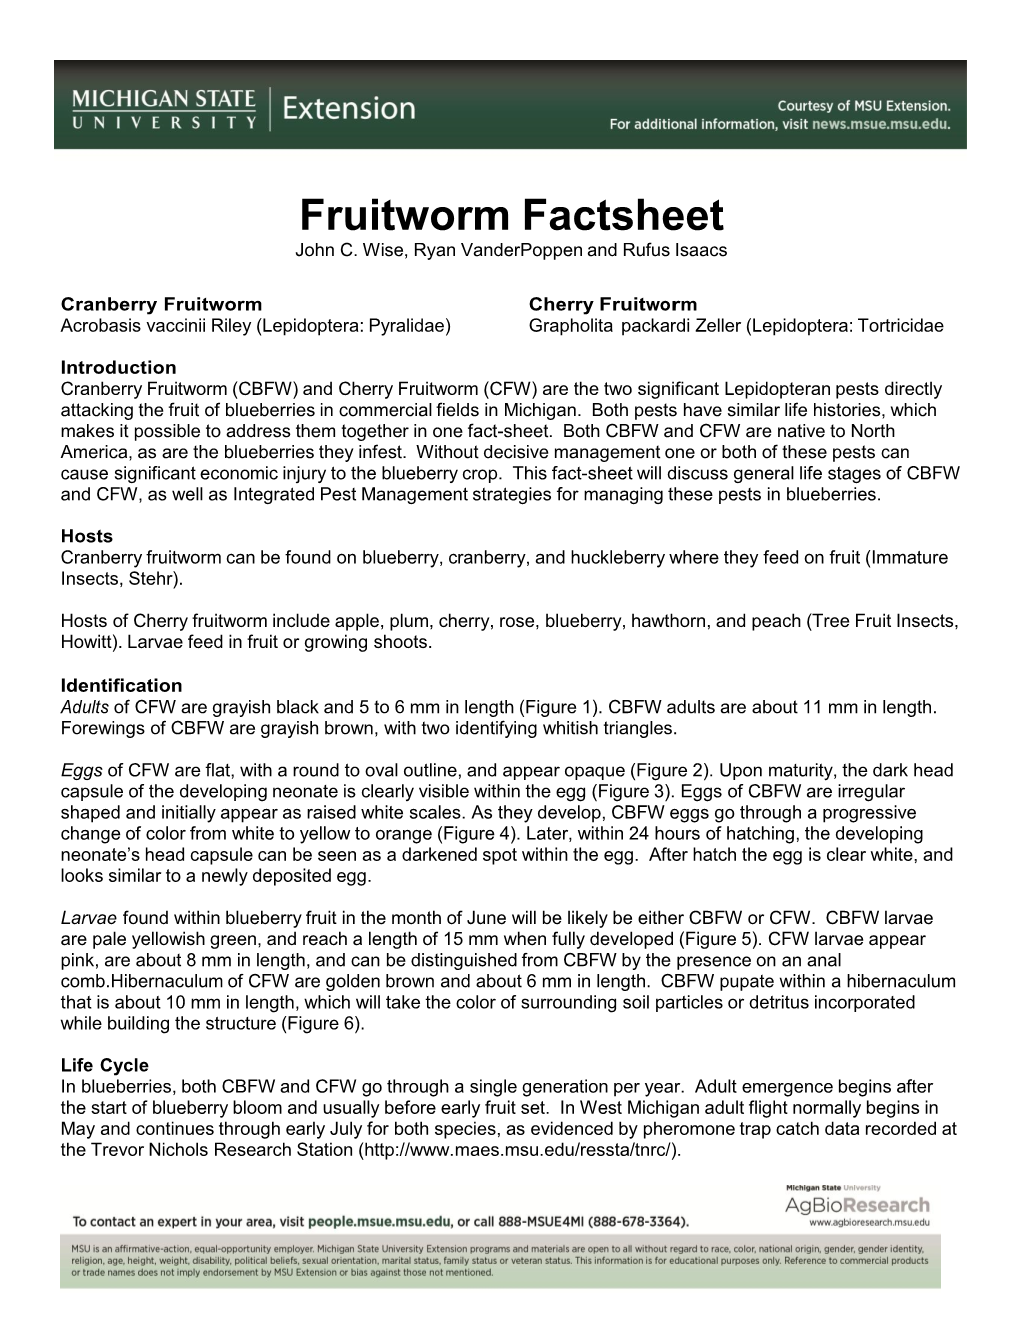 Blueberry Fruitworm Factsheet